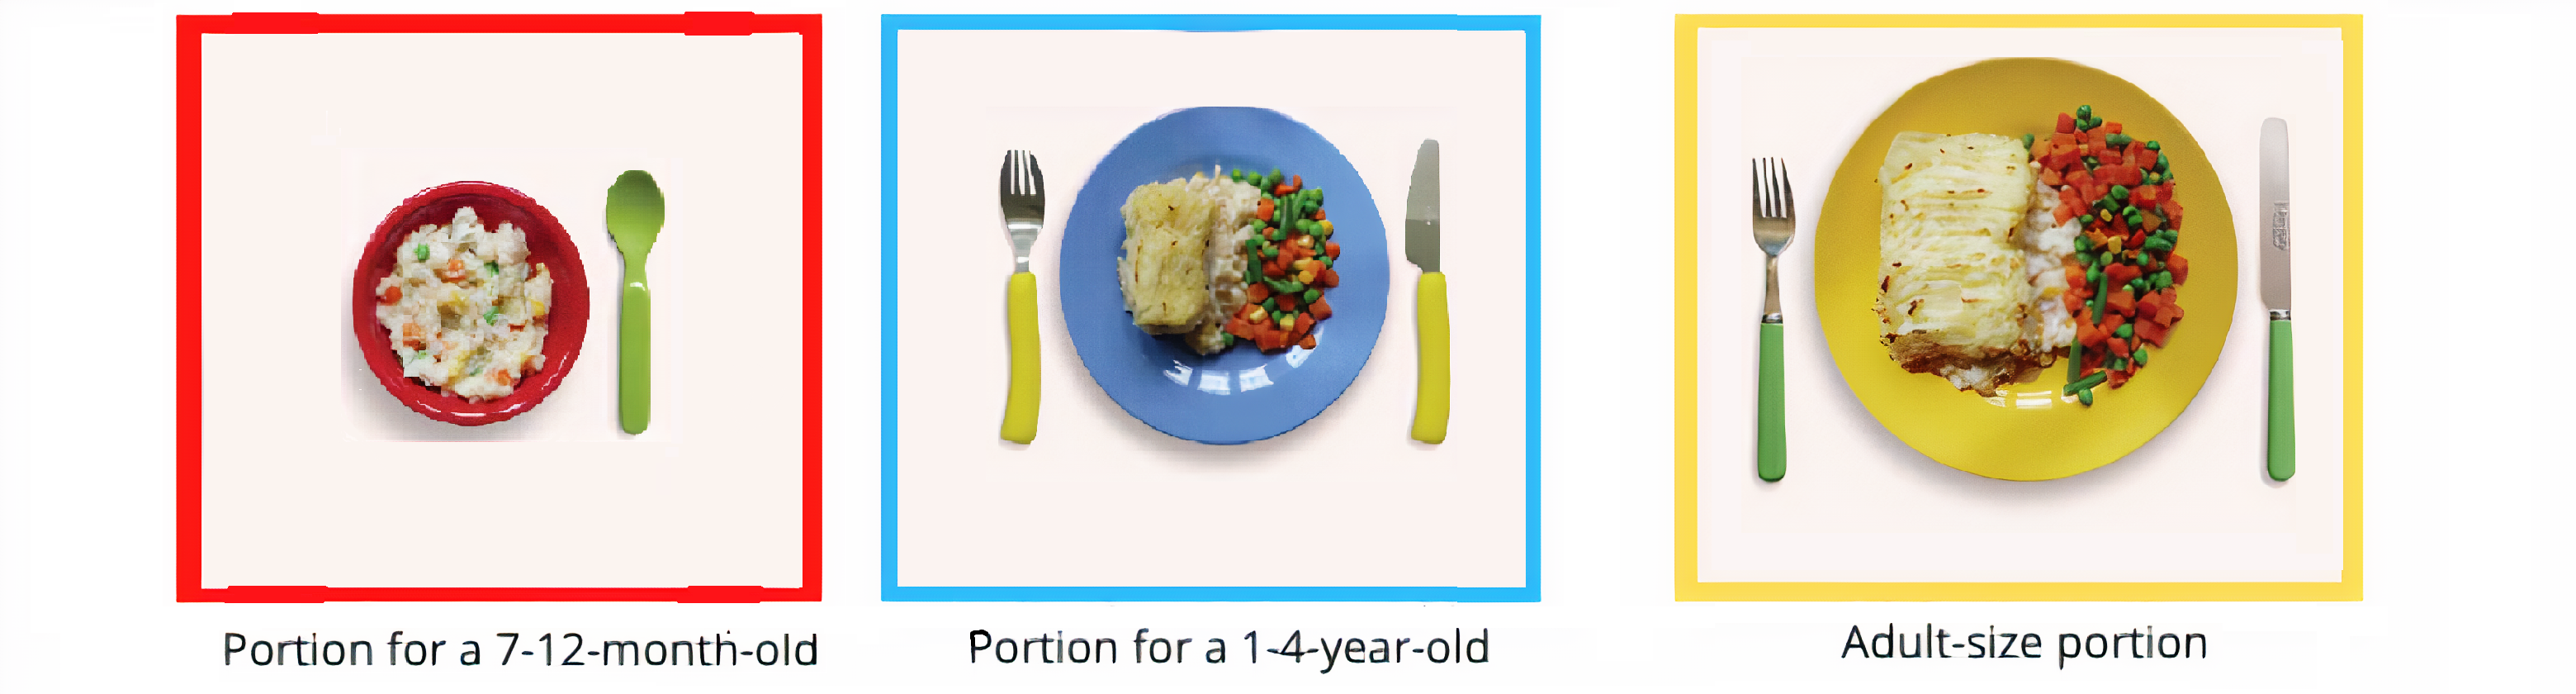 Portion Size Comparison